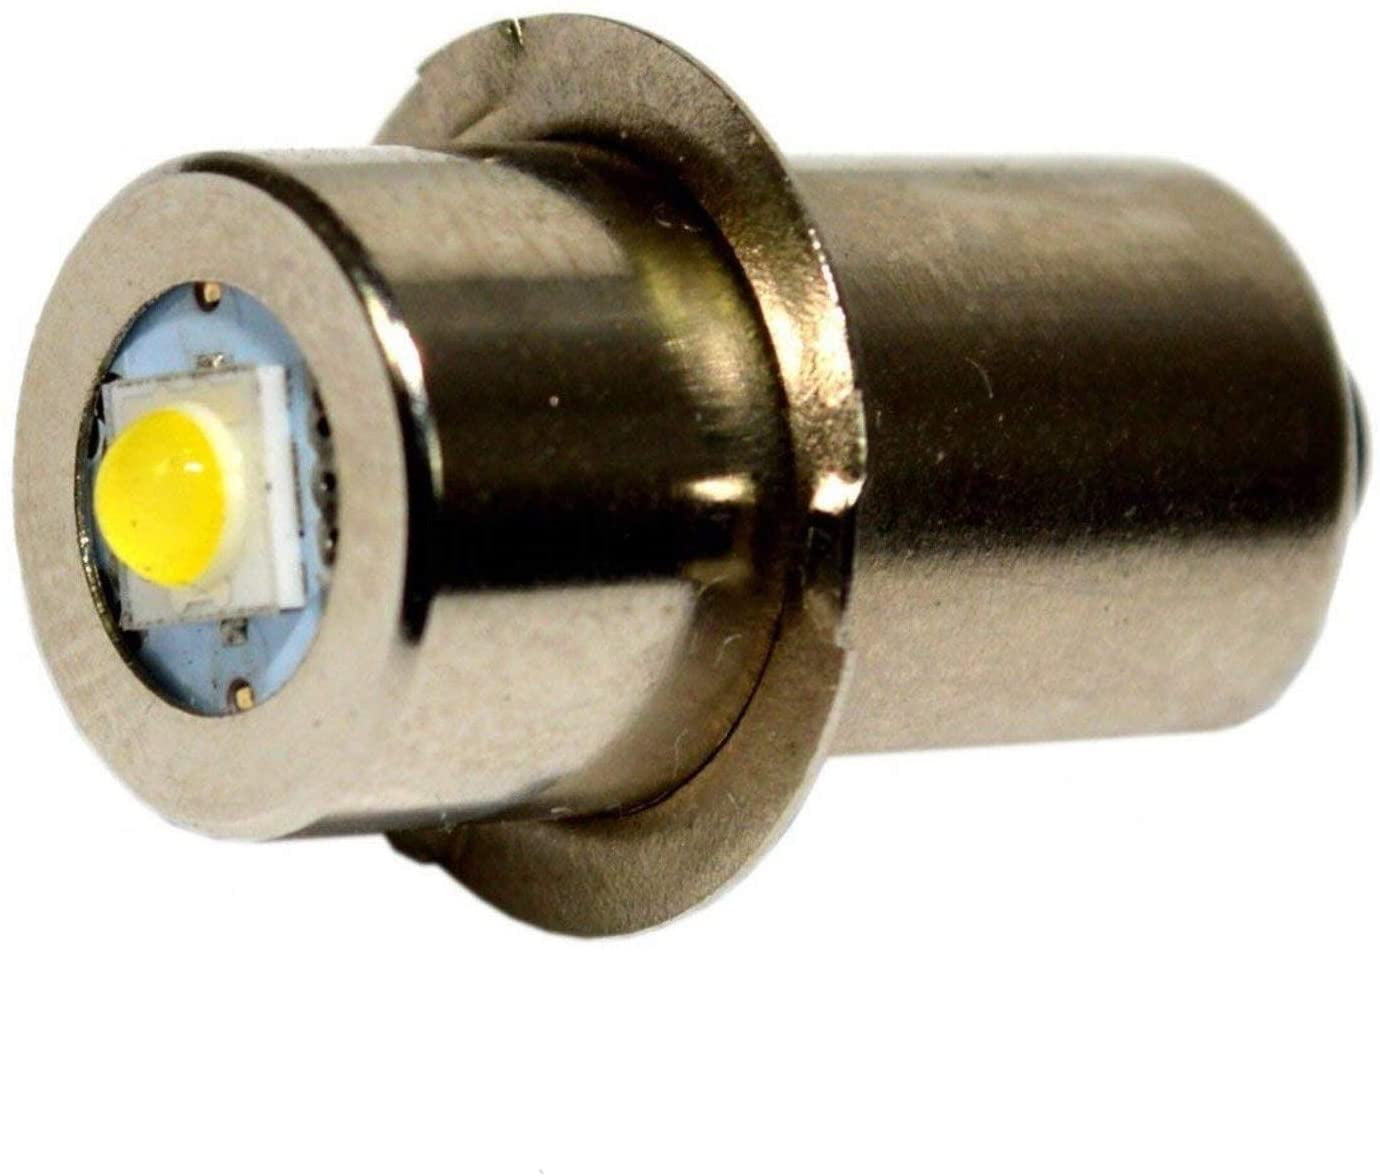 24V LED Replacement Bulb Kolbalt Bosch Ridgid B&D Flashlight 5W P13.5S NEW 18V 